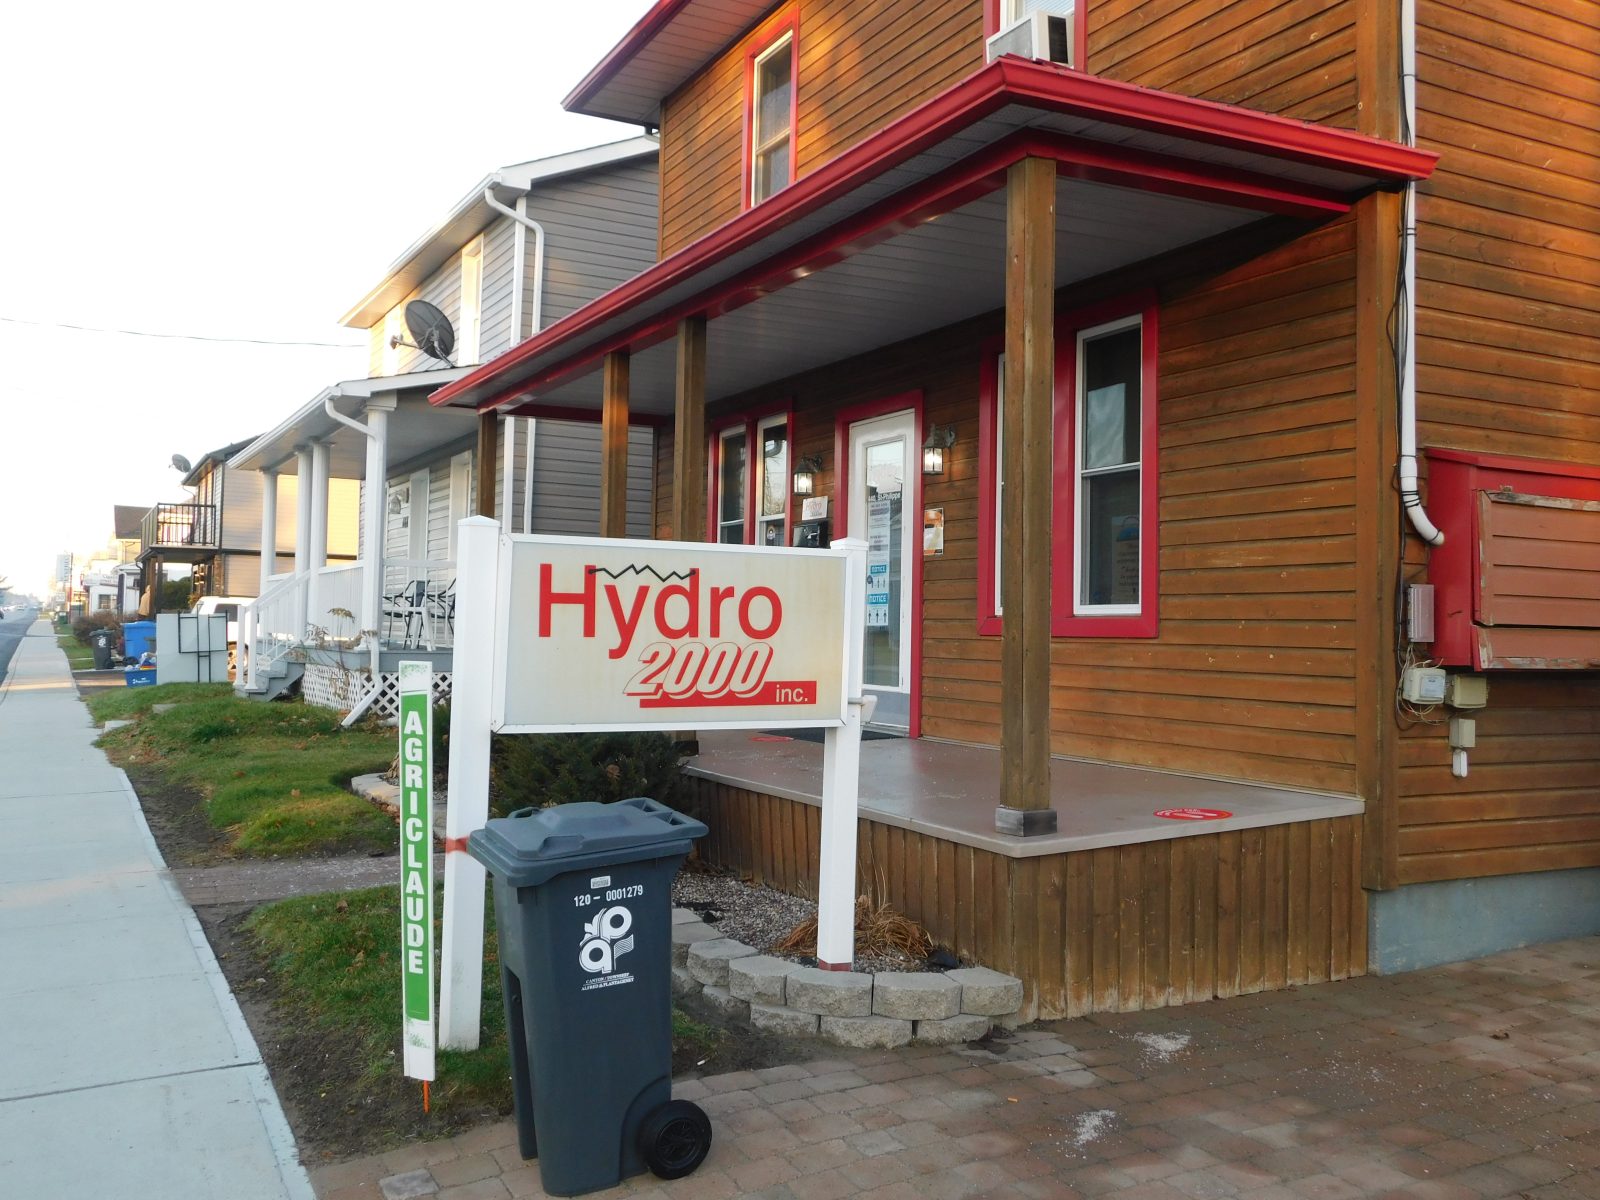 Hydro 2000 demande une aide financière au conseil municipal